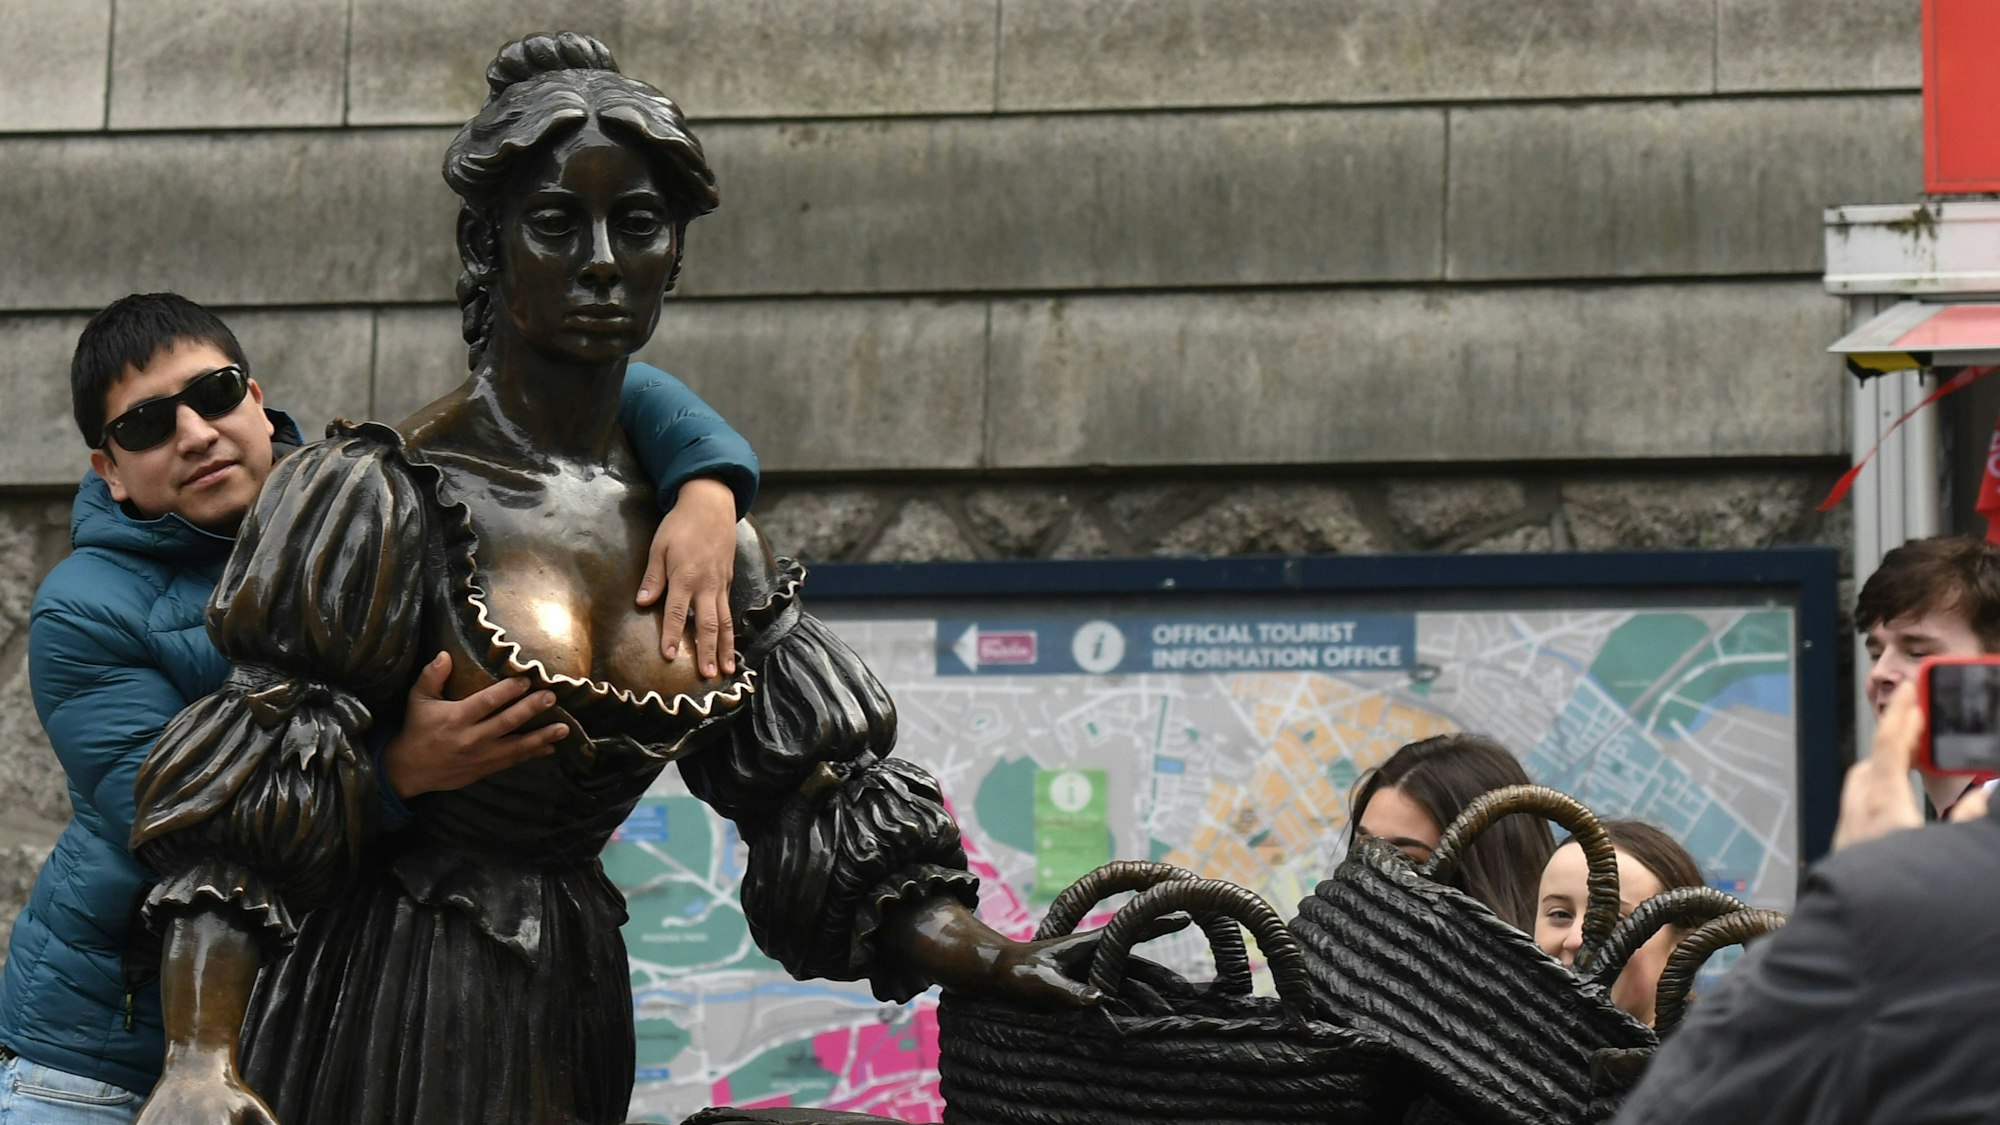 Solche Bilder will Aktivistin Tilly Cripwell nicht mehr sehen müssen: Ein Tourist berührt die Statue an den Brüsten, das soll Glück bringen.